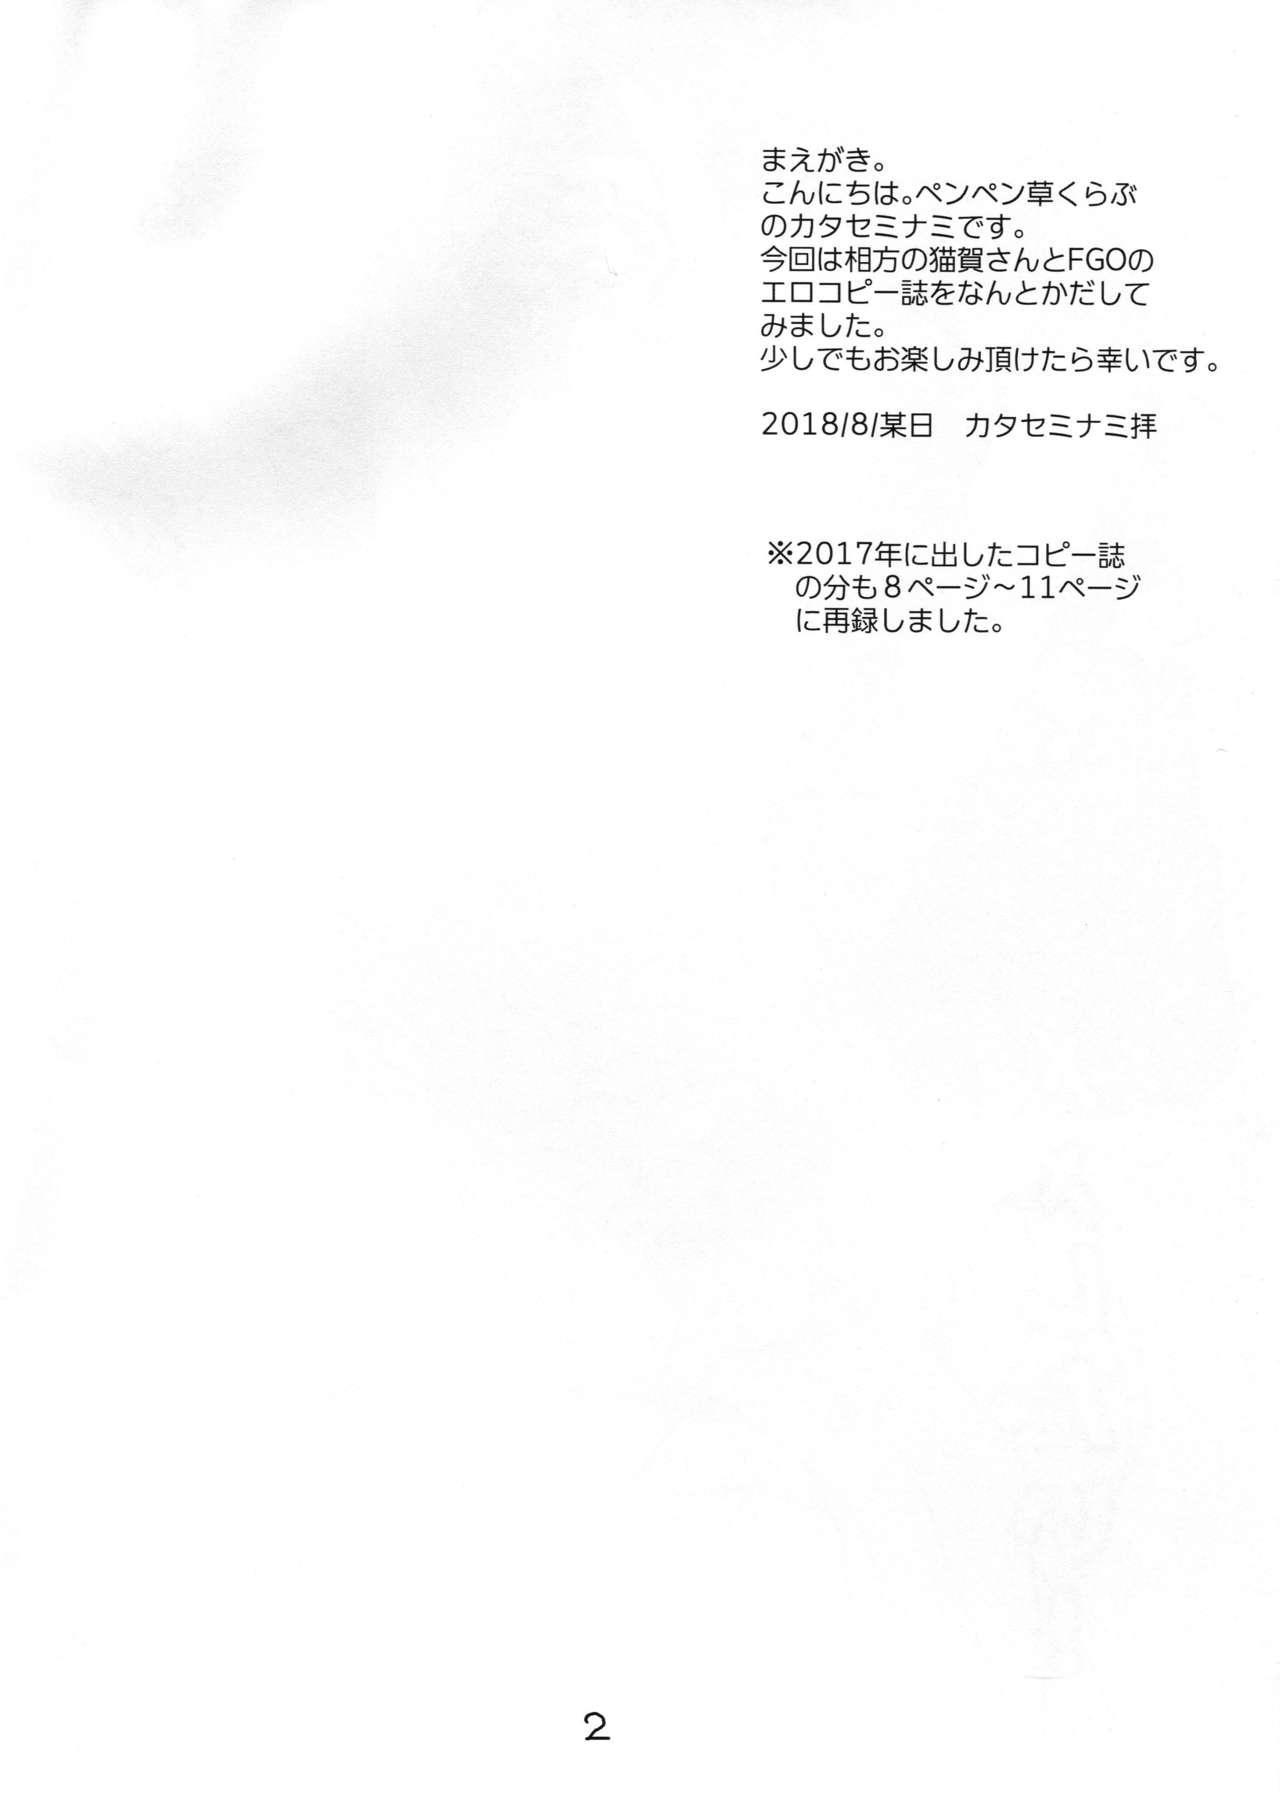 Unshaved Mizugi no anoko to ×× shitai! - Fate grand order Ecuador - Page 2